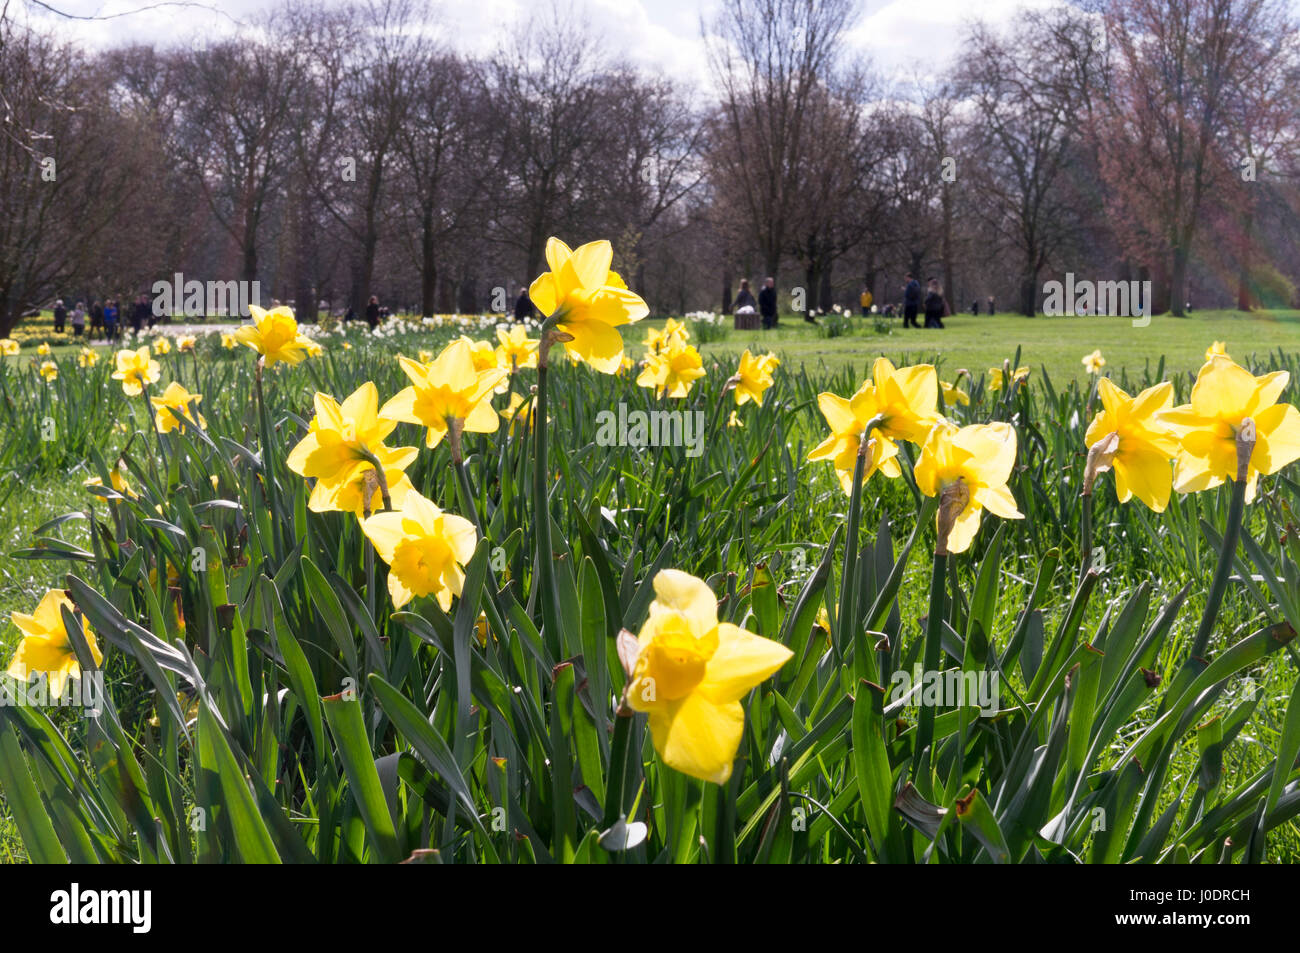 Un champ de tulipes jaunes fleurissent au St James's Park à Londres, l'un des grands espaces verts à proximité de Buckingham Palace Banque D'Images